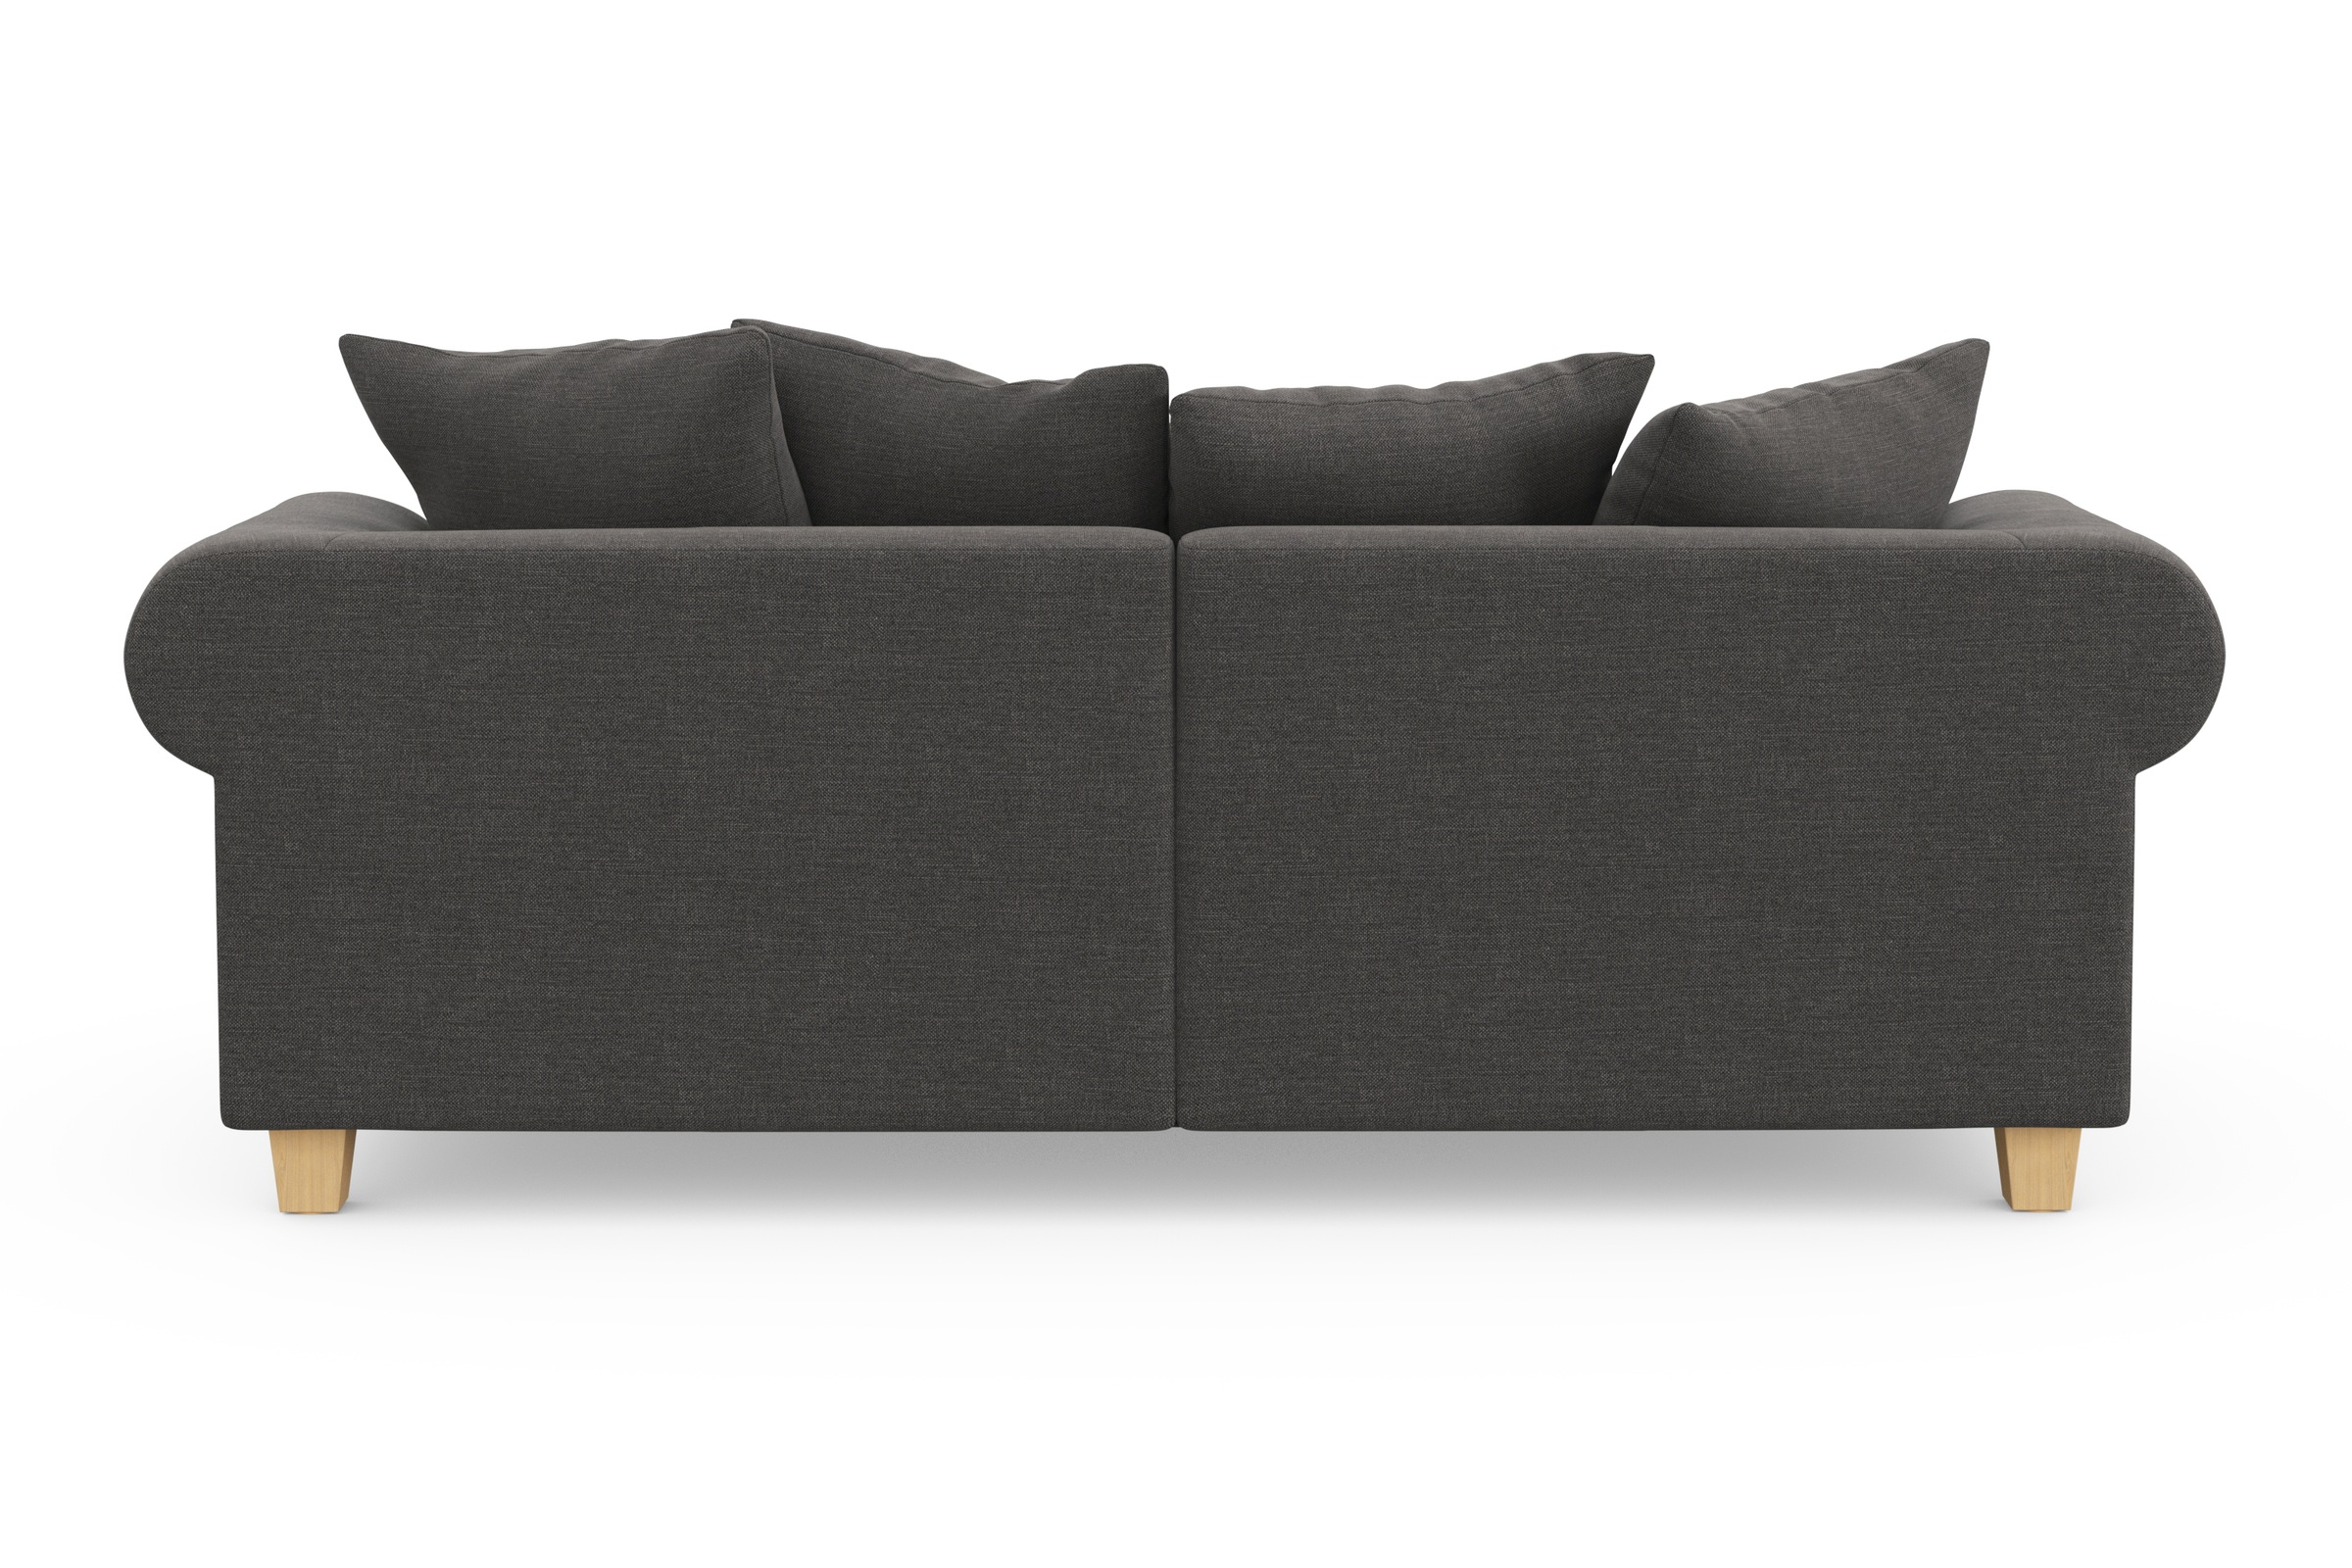 Home affaire Big-Sofa »Queenie (2 Online-Shop im kuschelige Megasofa«, weichem Sitzkomfort und mit viele Kissen Design, kaufen zeitlosem St.)